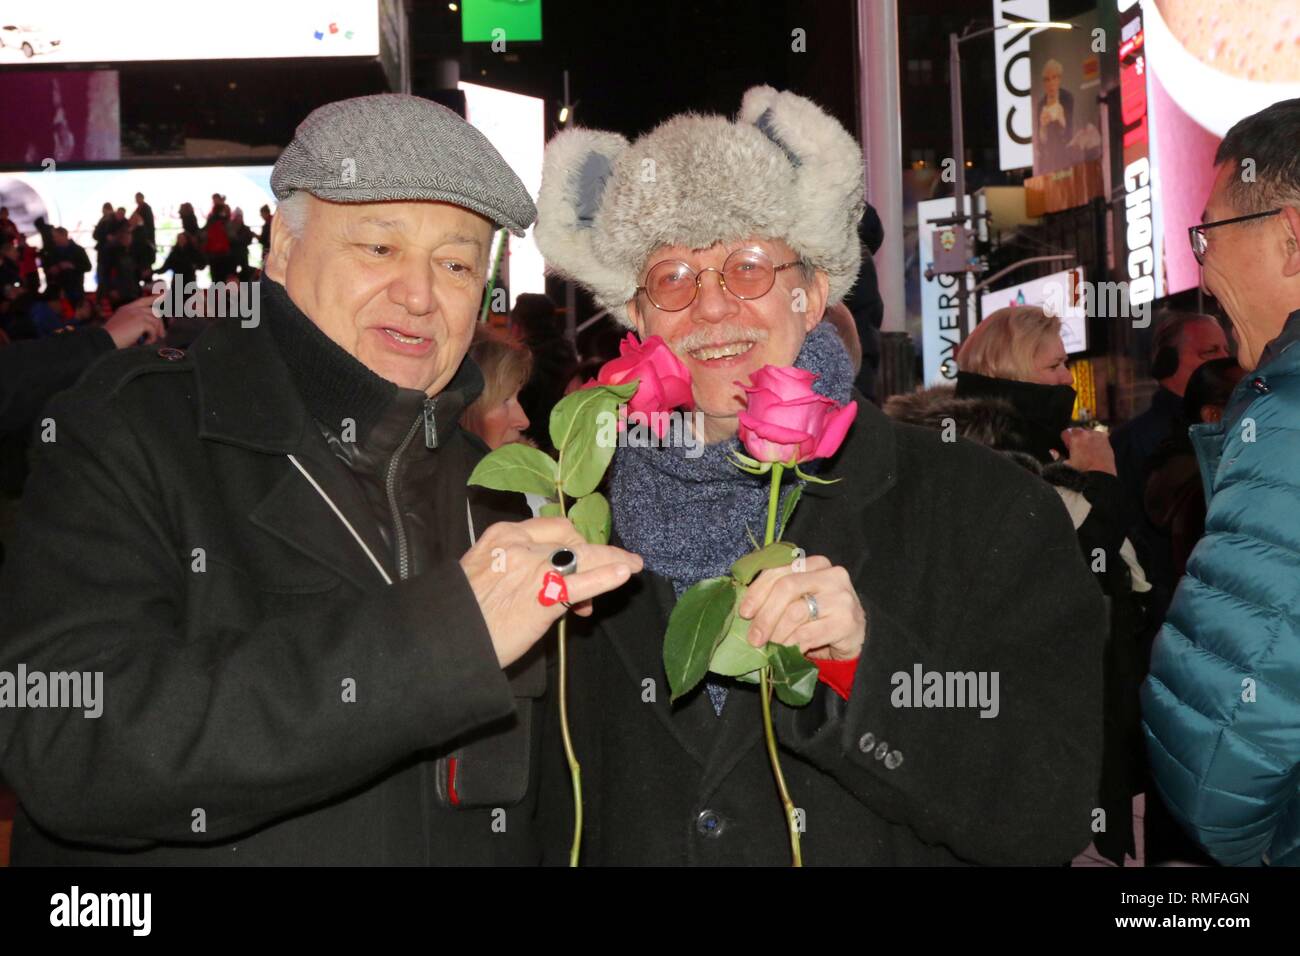 New York, NY, USA. 14 Feb, 2019. Paare feiern Romantik, Leidenschaft, und jede andere in einer freundlichen Tour-de-Liebe bei der jährlichen Gelübde Erneuerung Zeremonie in Times Square am 14. Februar, 2019. Die Zeremonie, inszeniert von der Times Square Alliance wurde auf der ikonischen Glas Rot Schritte gehalten, mit Paare jeden Alters und Herkunft bekennen ihre Liebe noch einmal. © 2019 G. Ronald Lopez/DigiPixsAgain. us/Alamy leben Nachrichten Stockfoto